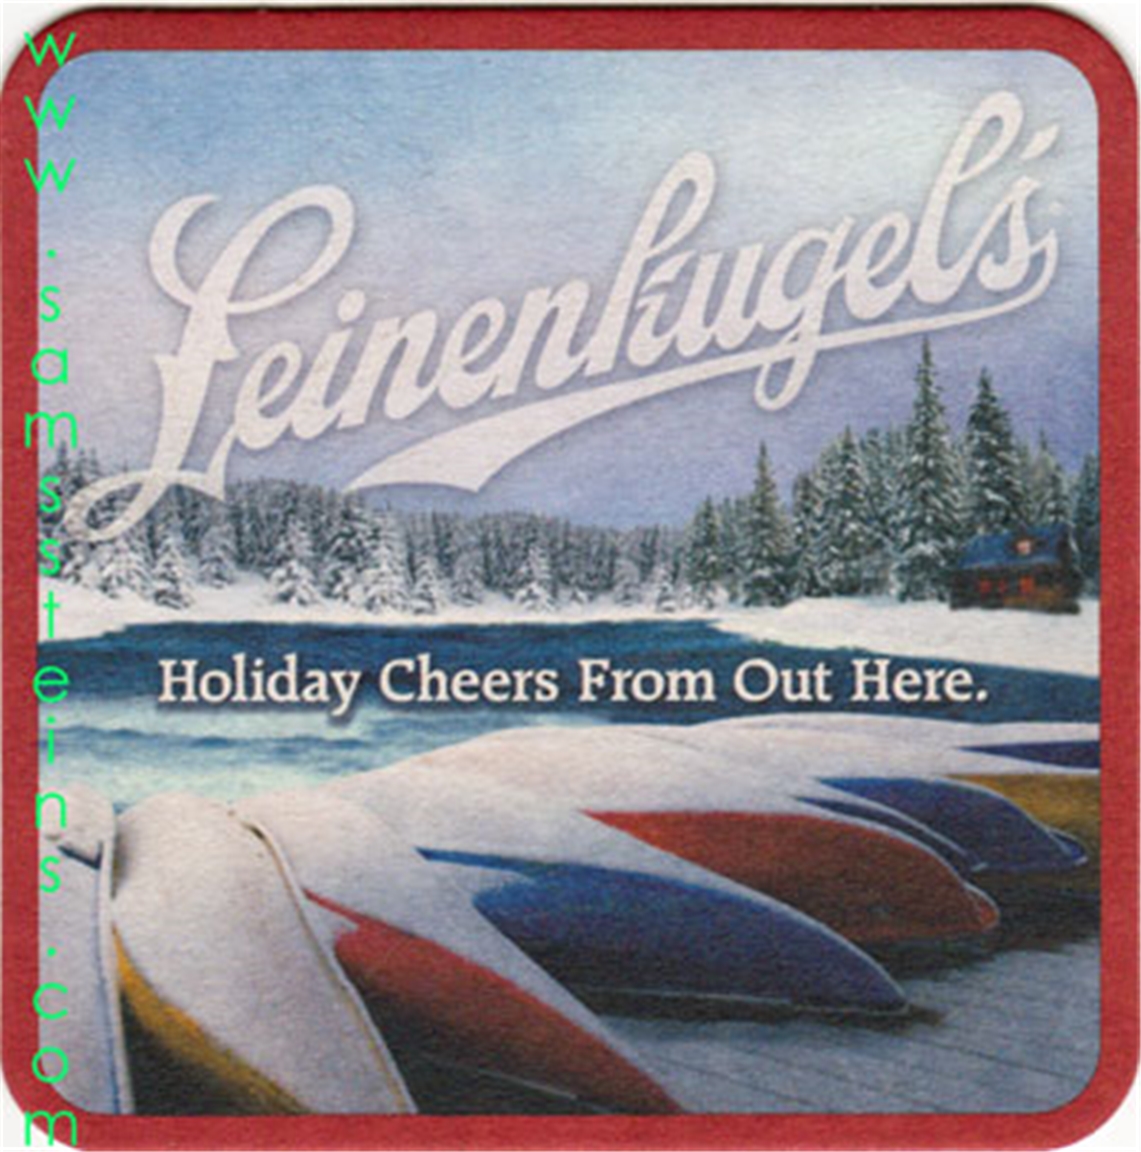 Leinenkugel's Holiday Cheers Beer Coaster